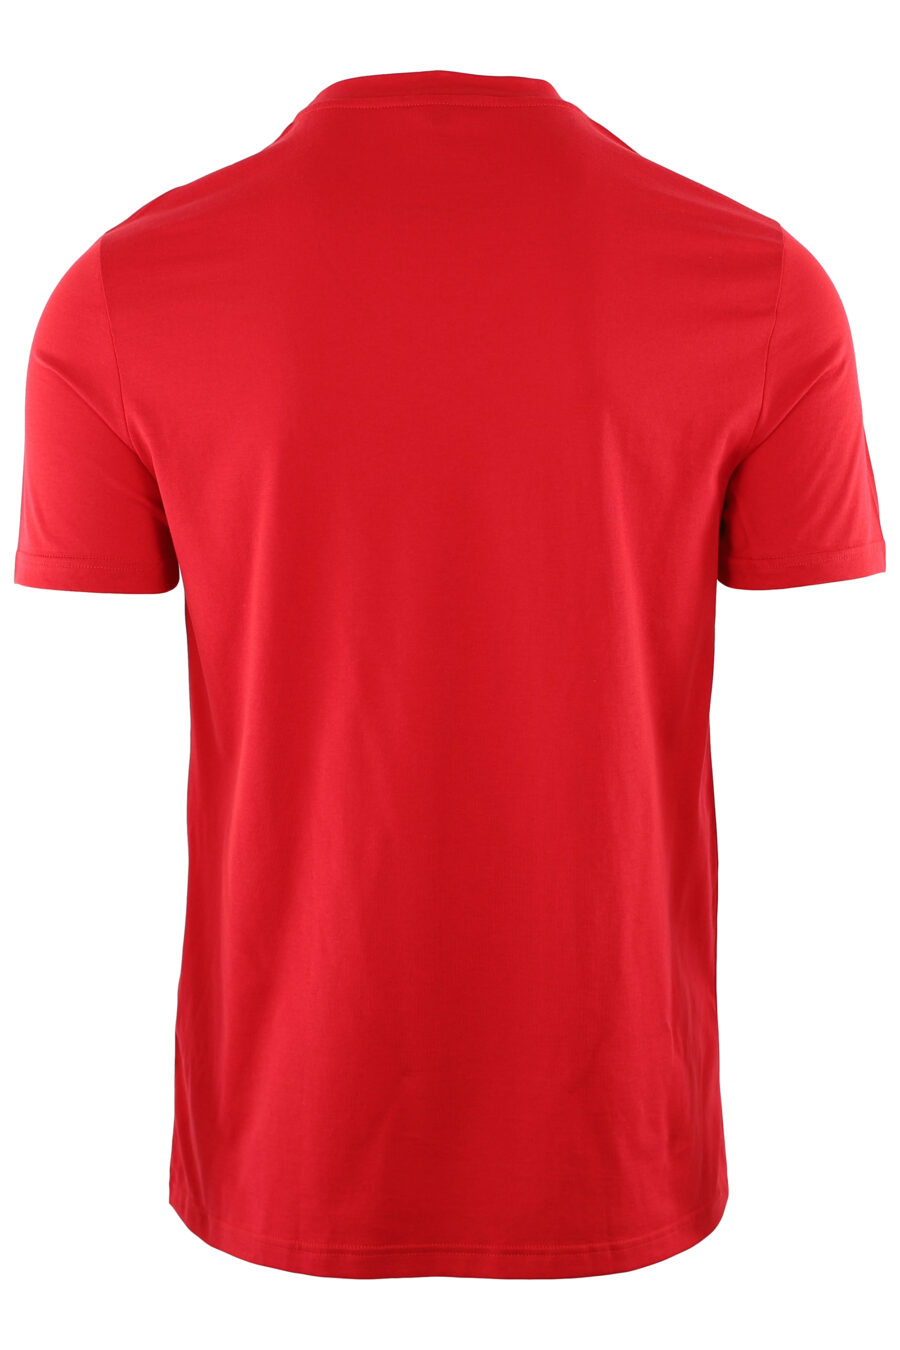 Rotes T-Shirt mit weißem gesticktem Logo - IMG 7410